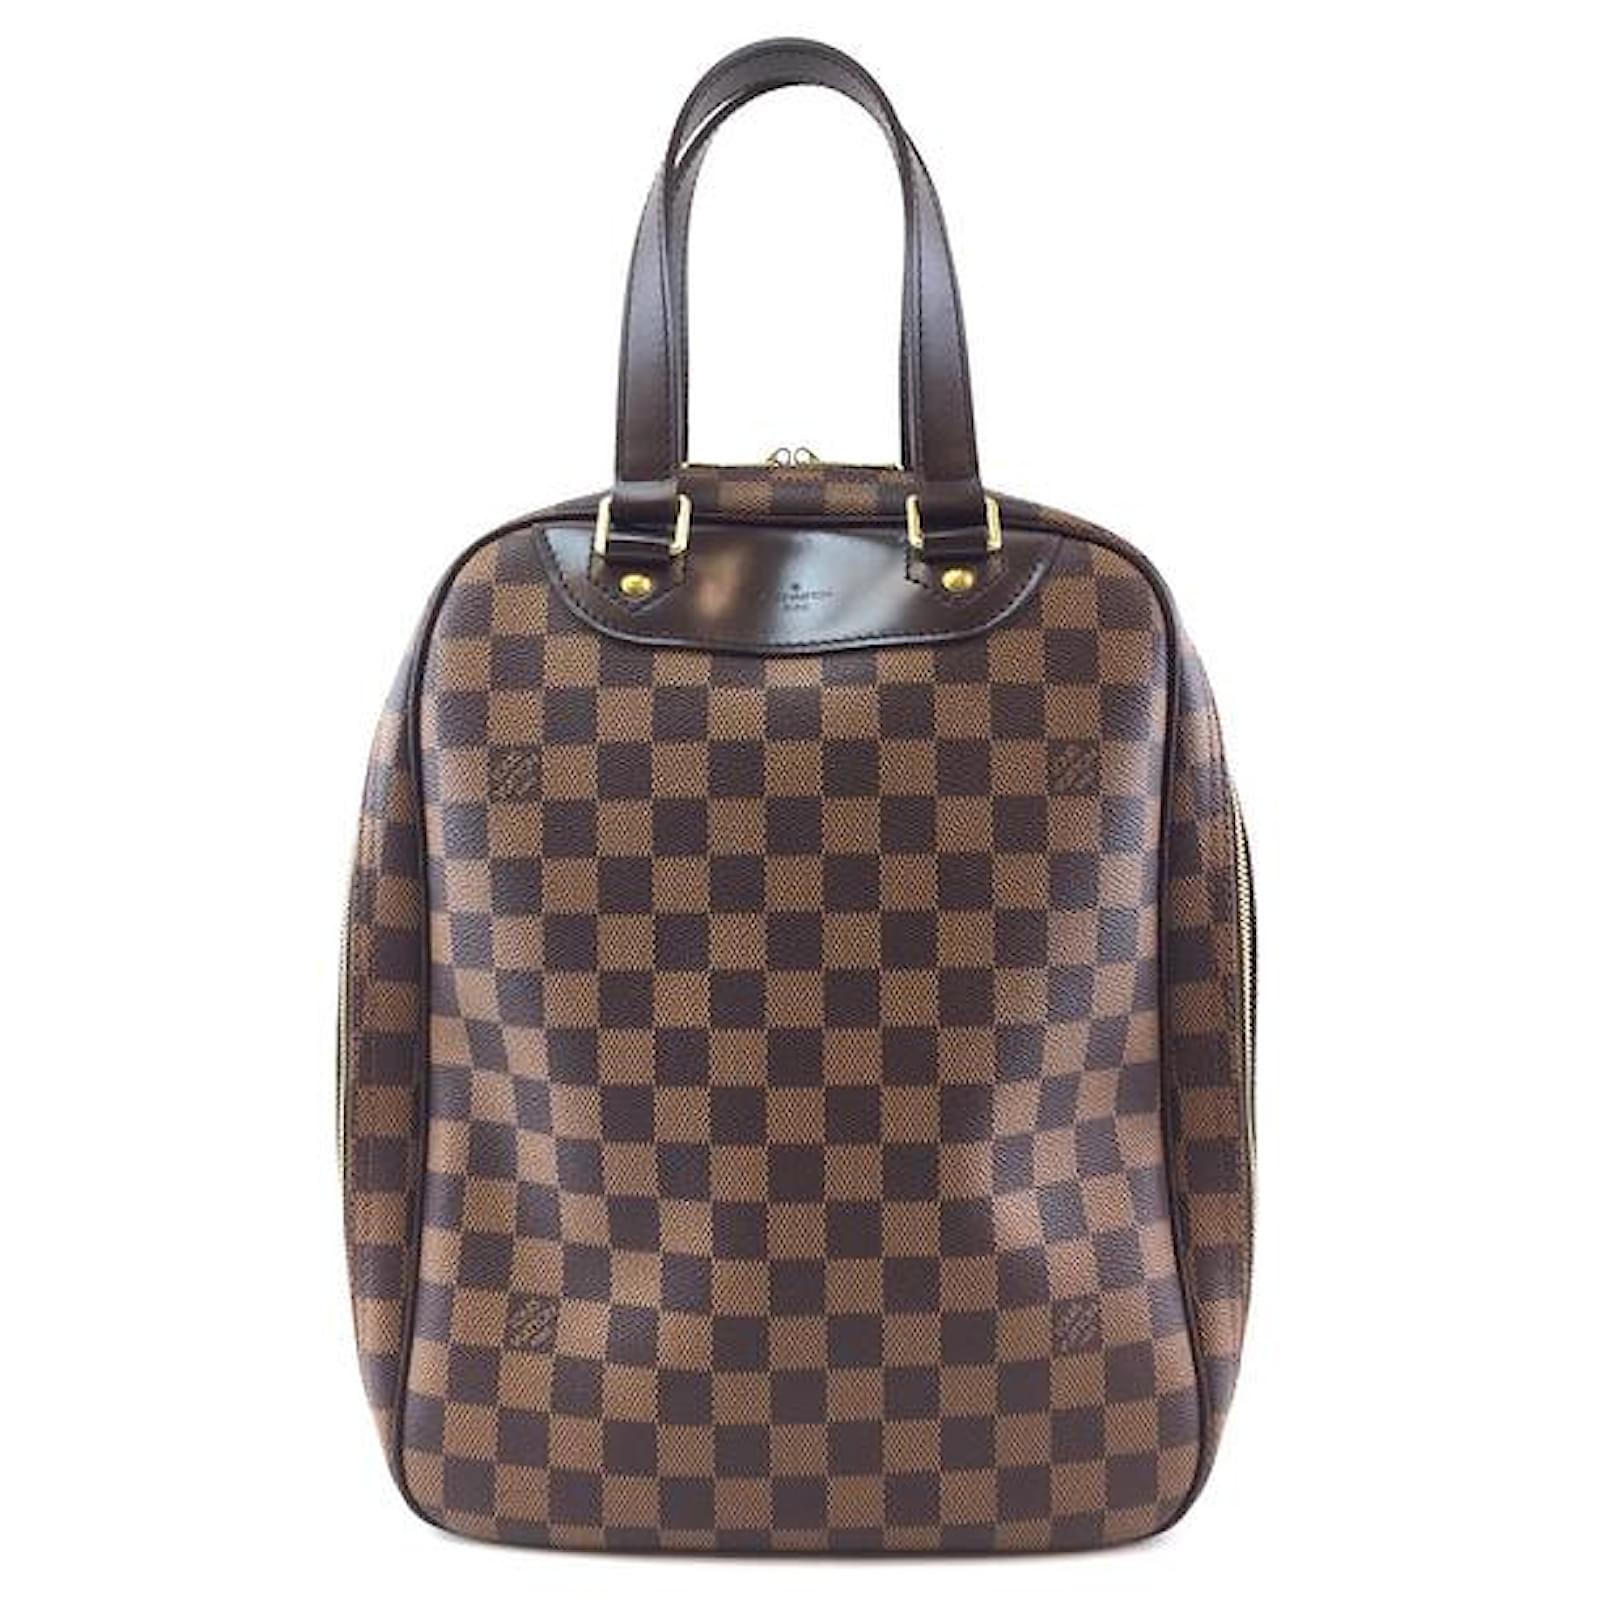 Authentic Louis Vuitton excursion bag.